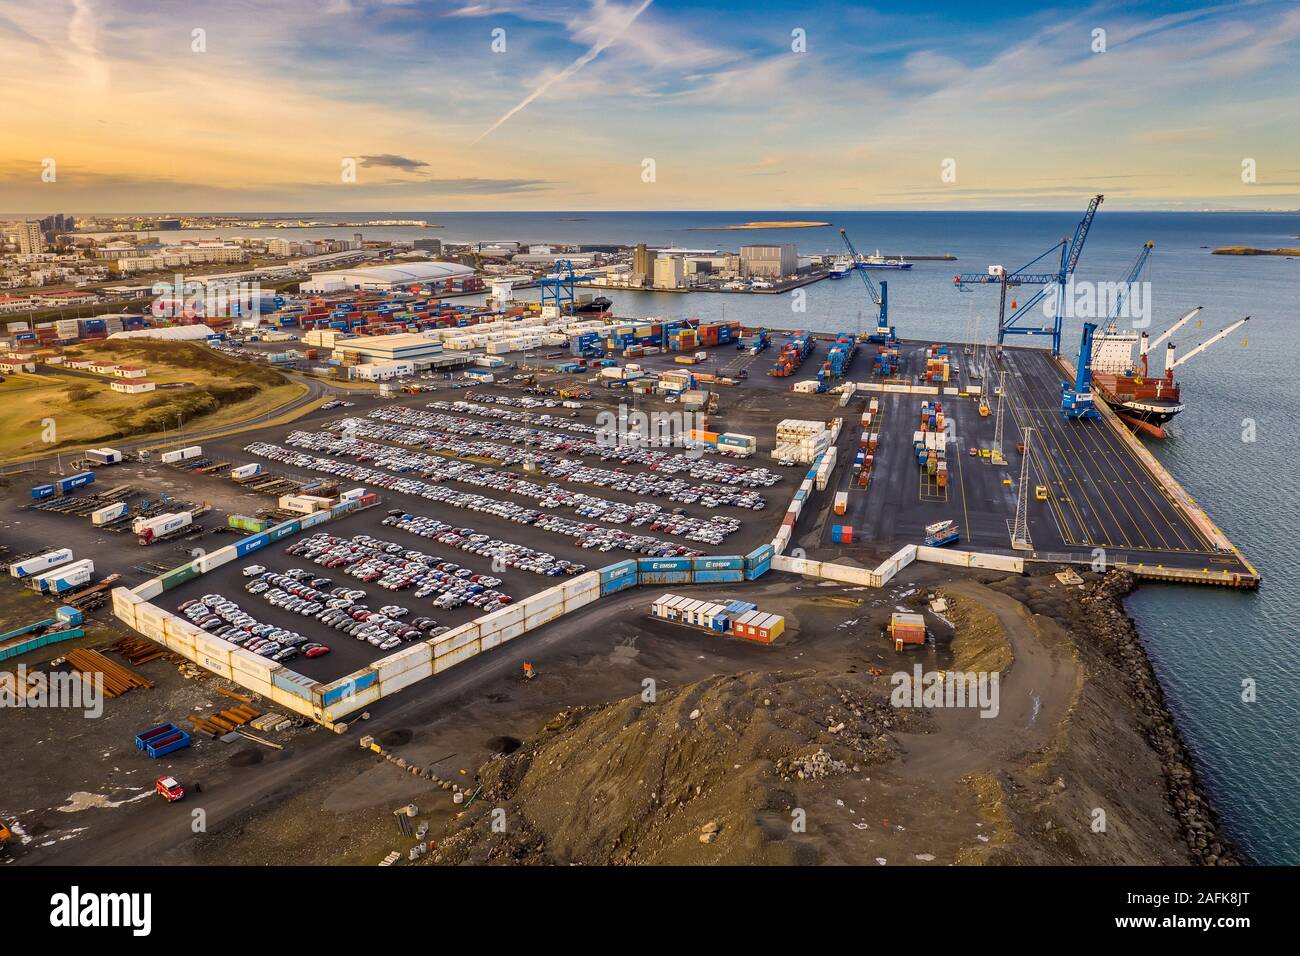 Port de Reykjavik, port d'expédition, Reykjavik, Islande Banque D'Images